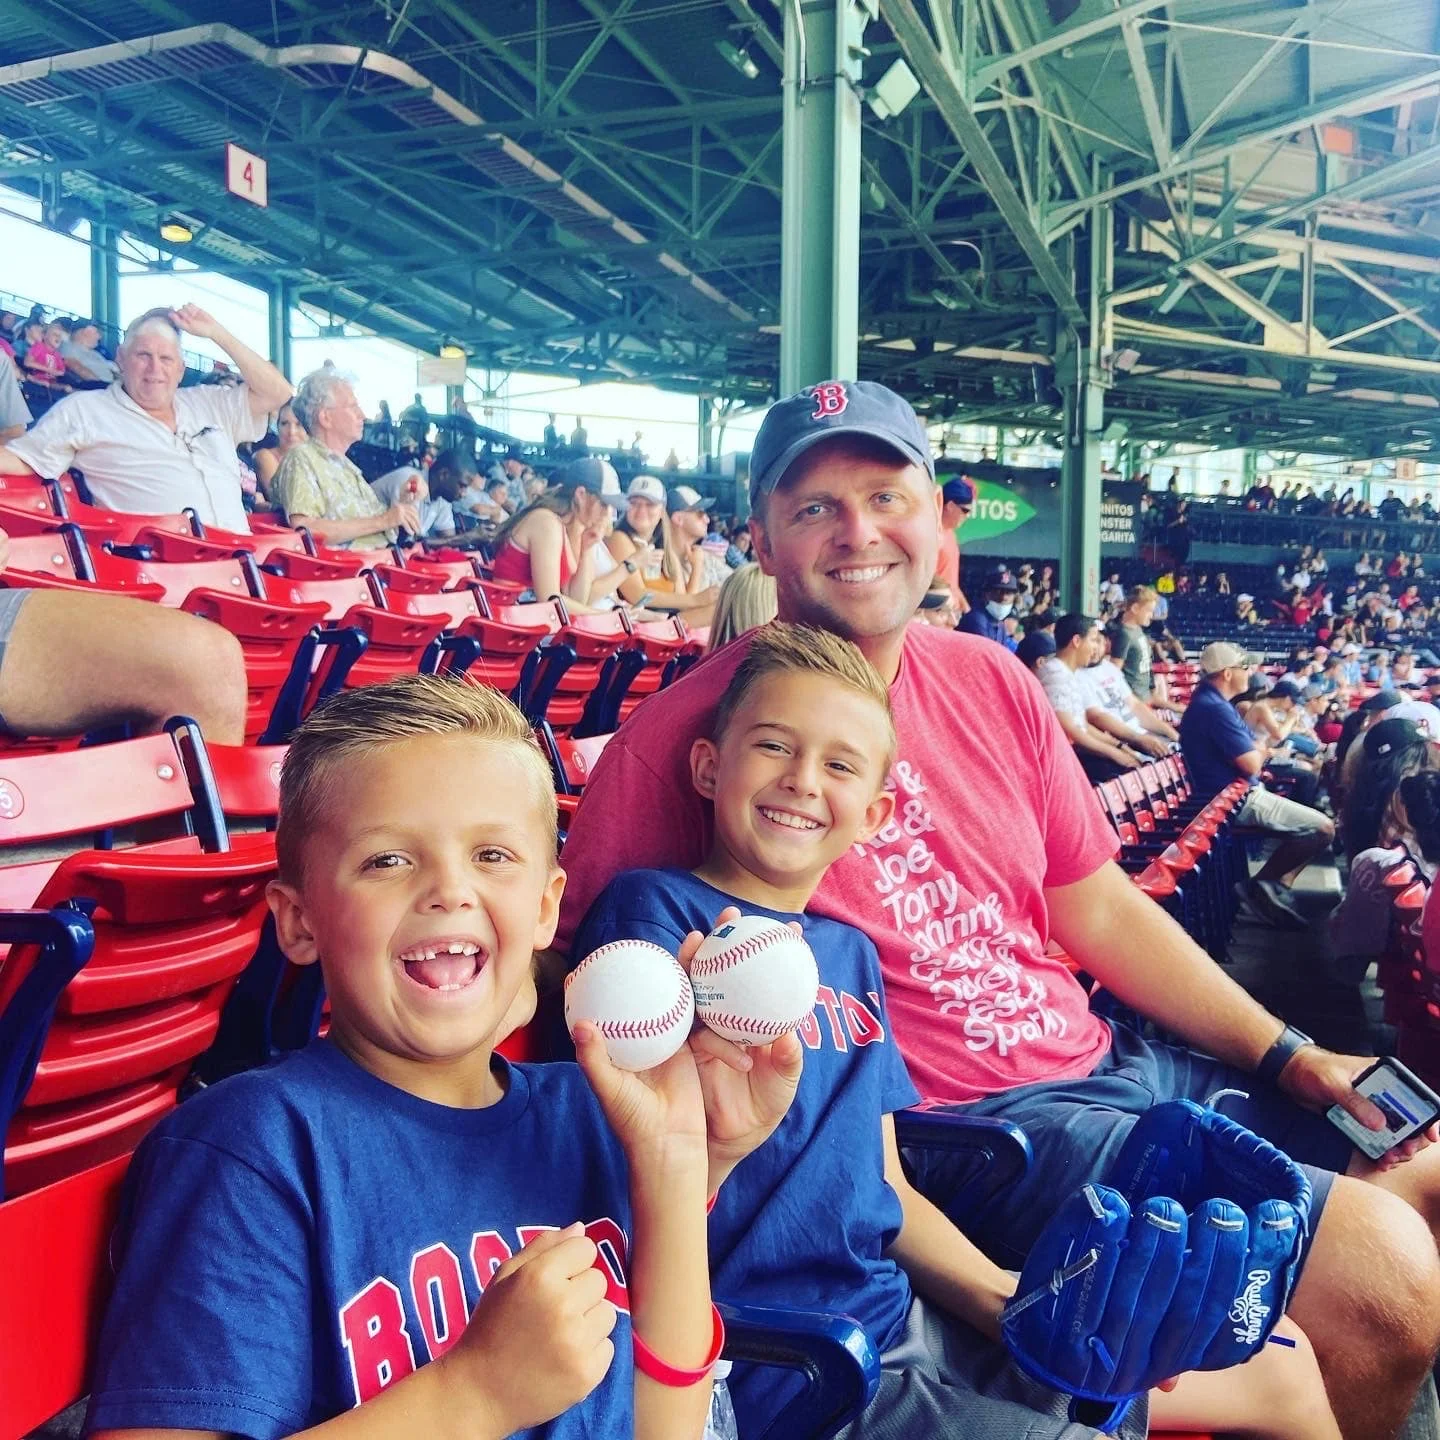 Jake Cain and his kids at a baseball game.